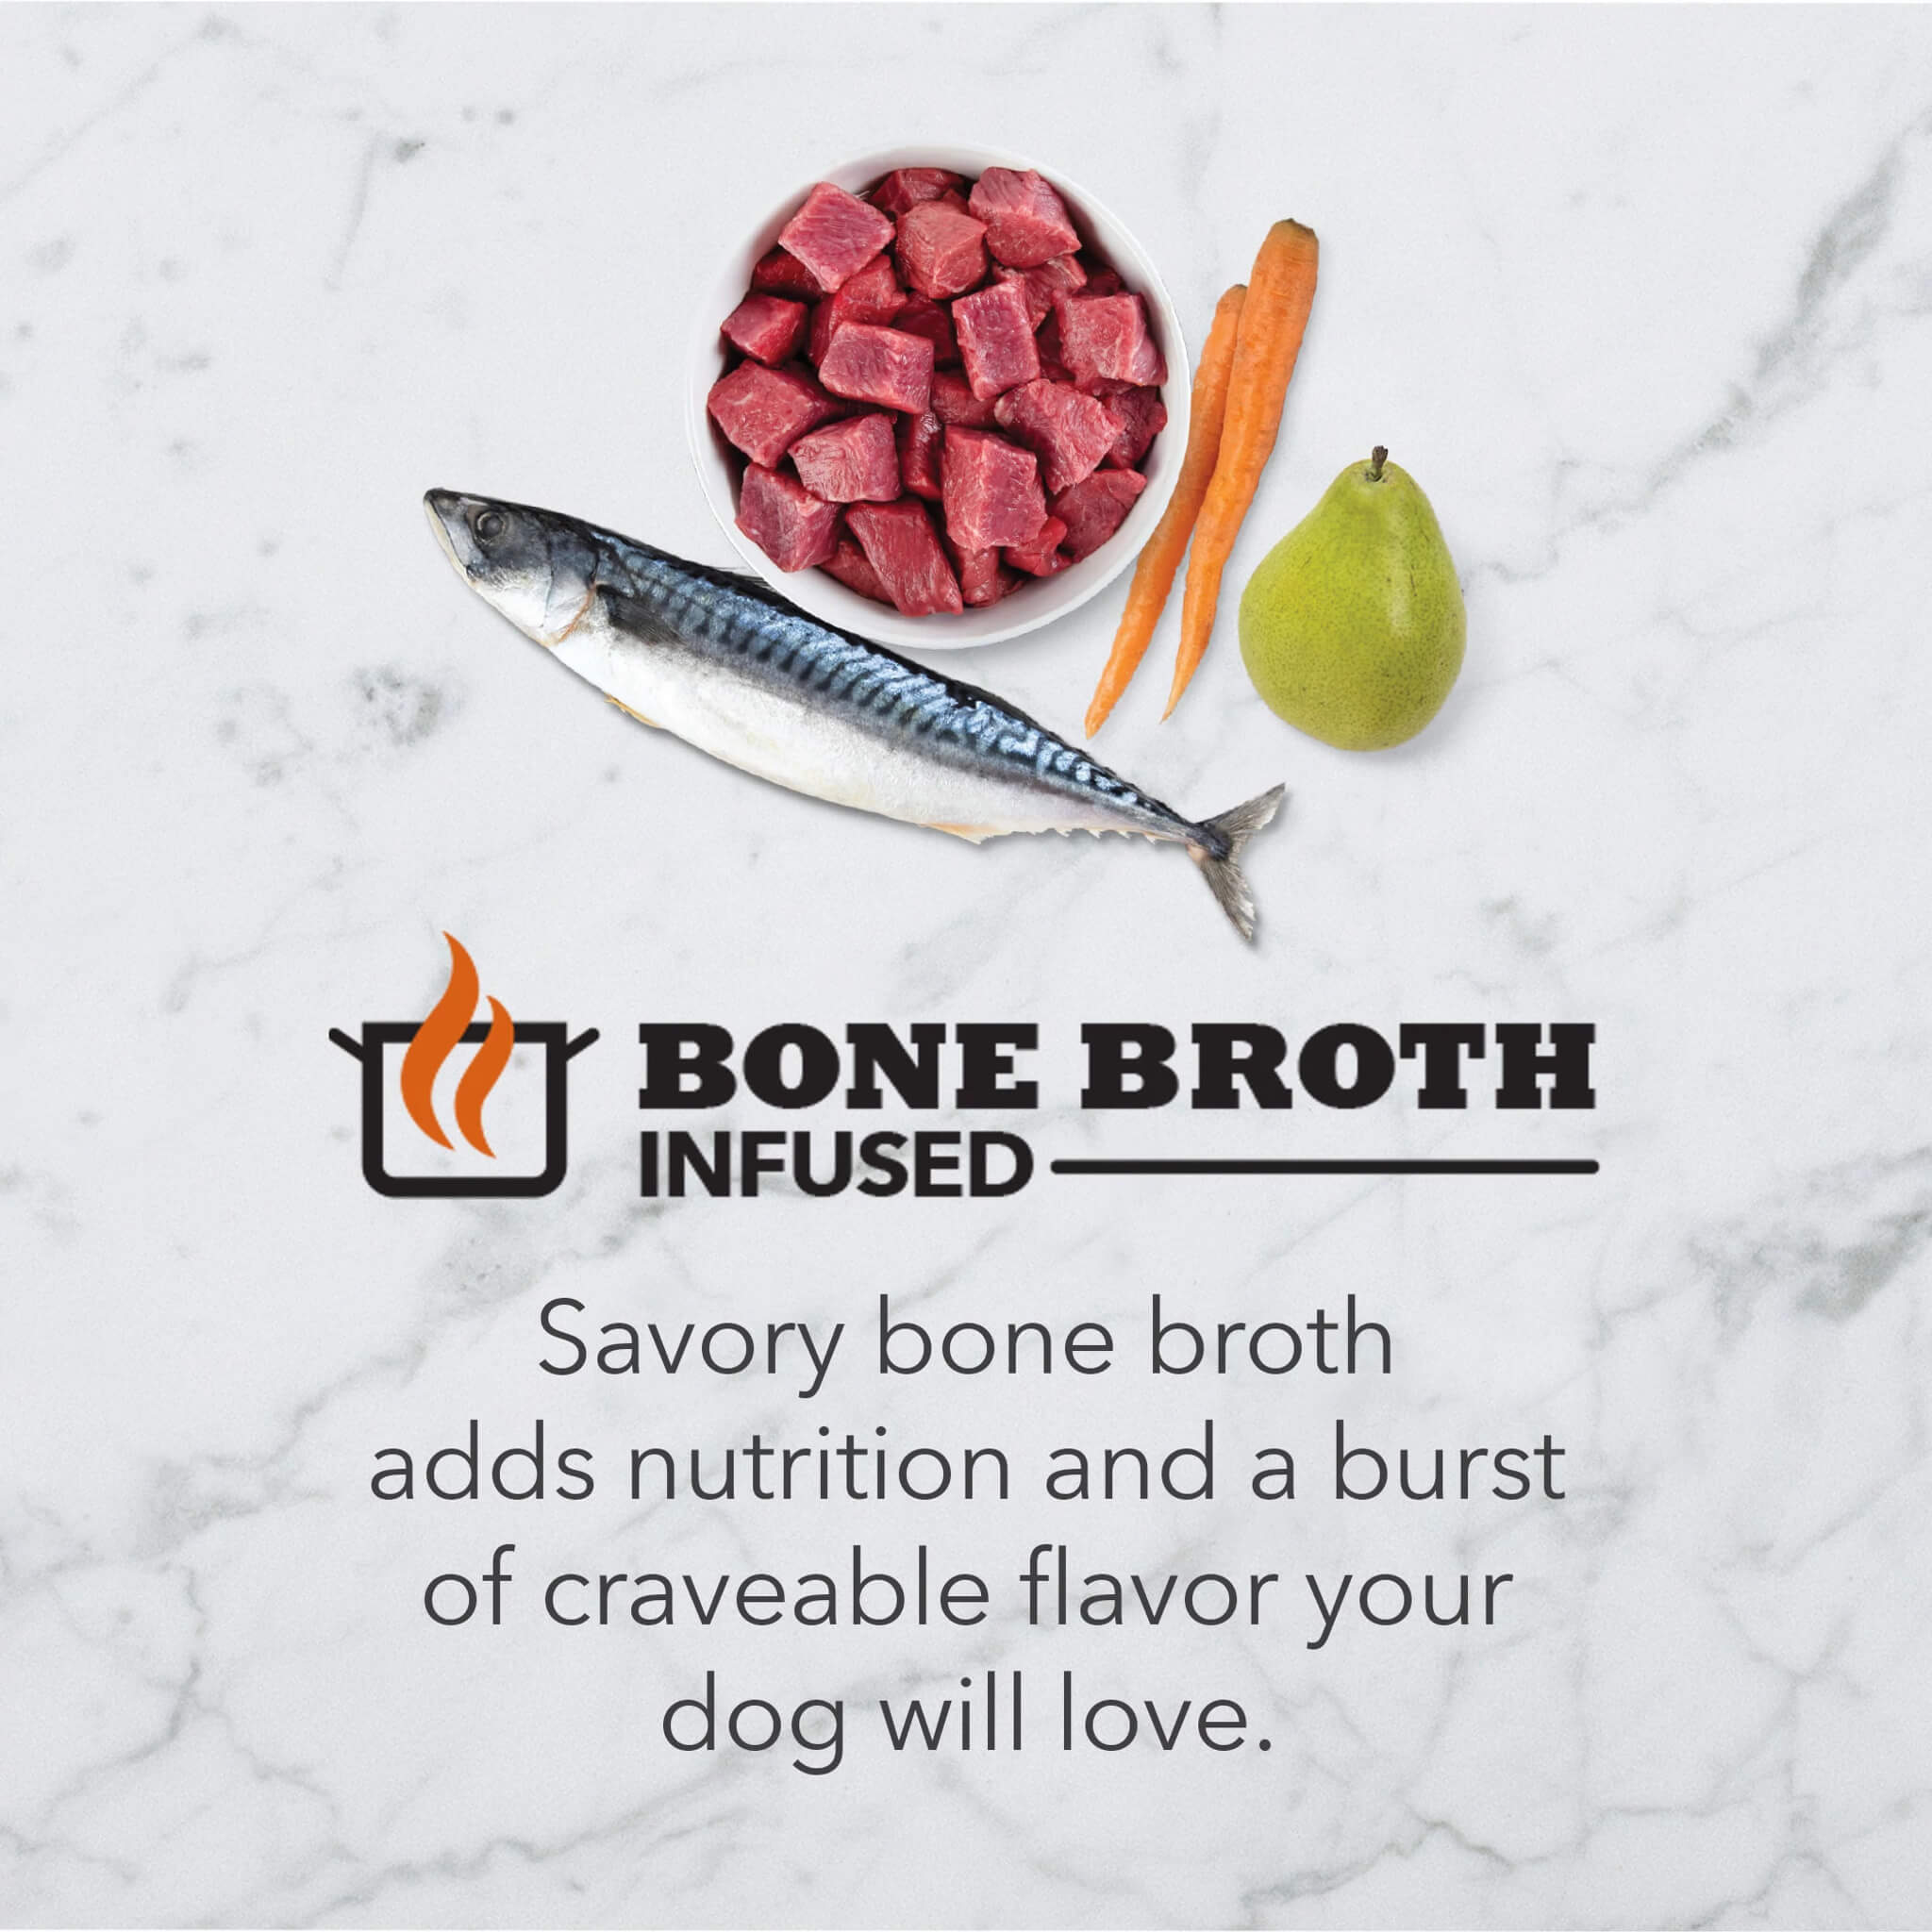 ACANA Bone broth infused